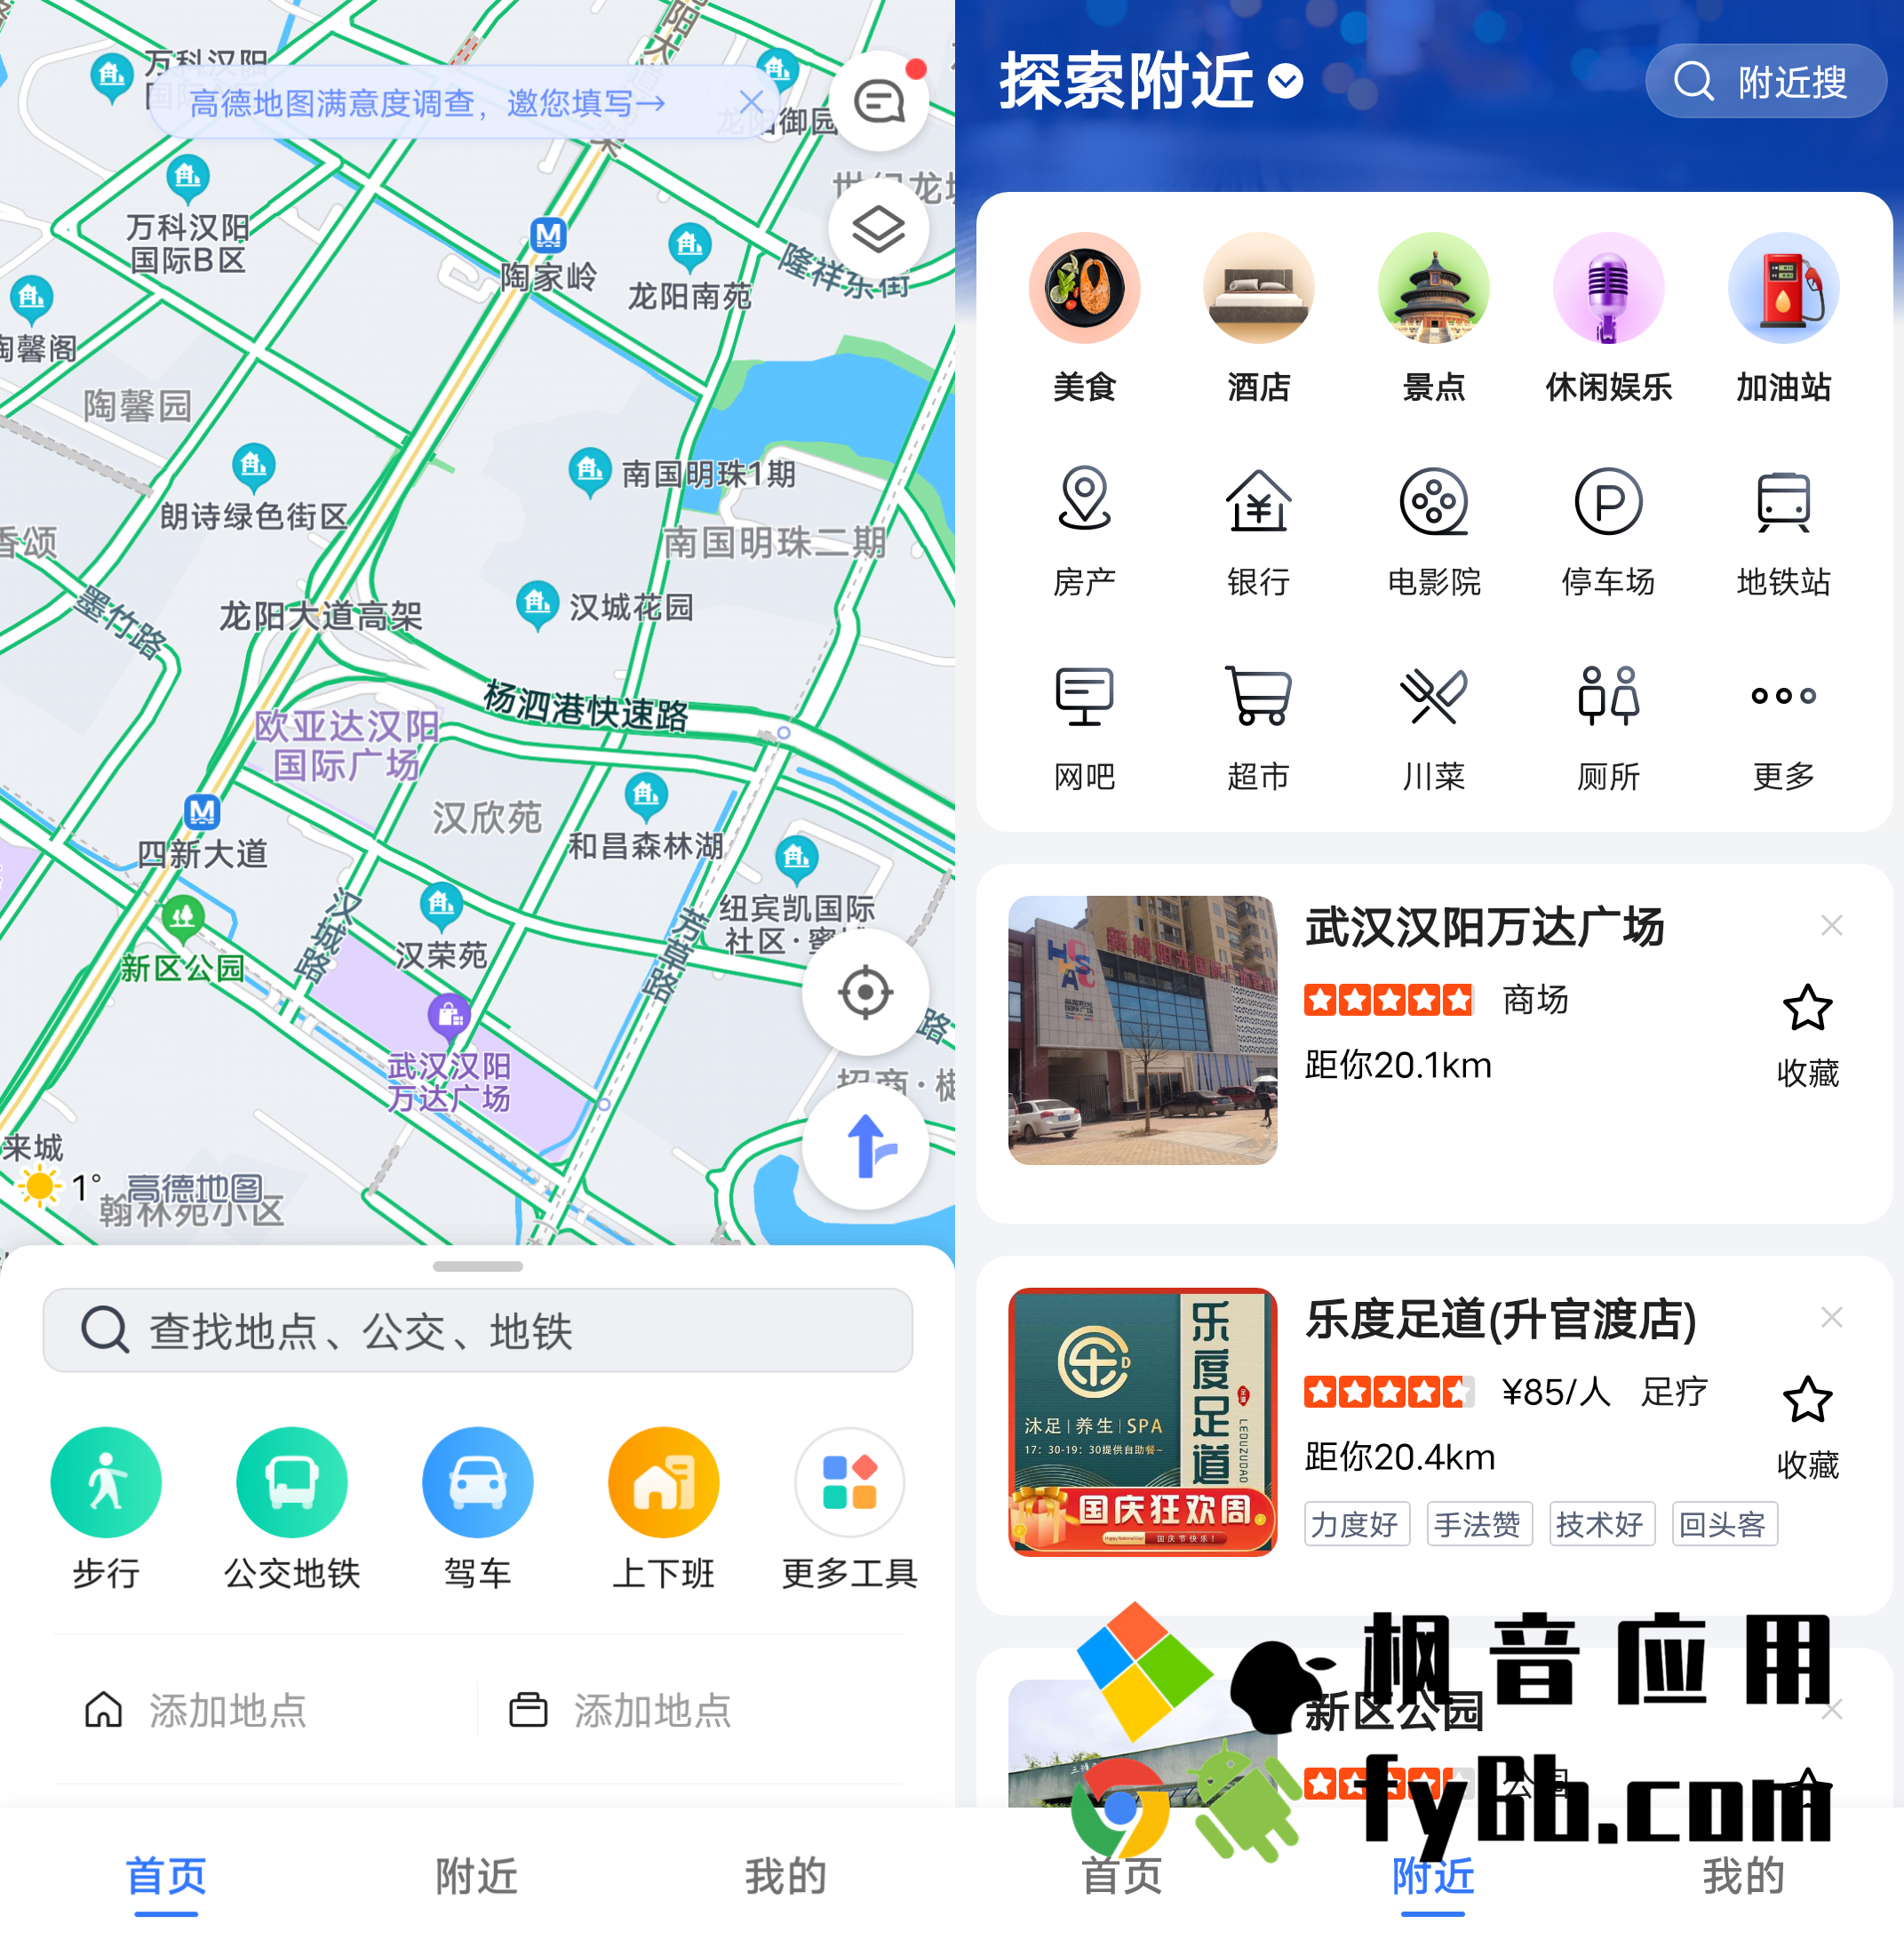 Android 高德地图_10.25.0.1191 谷歌清爽版